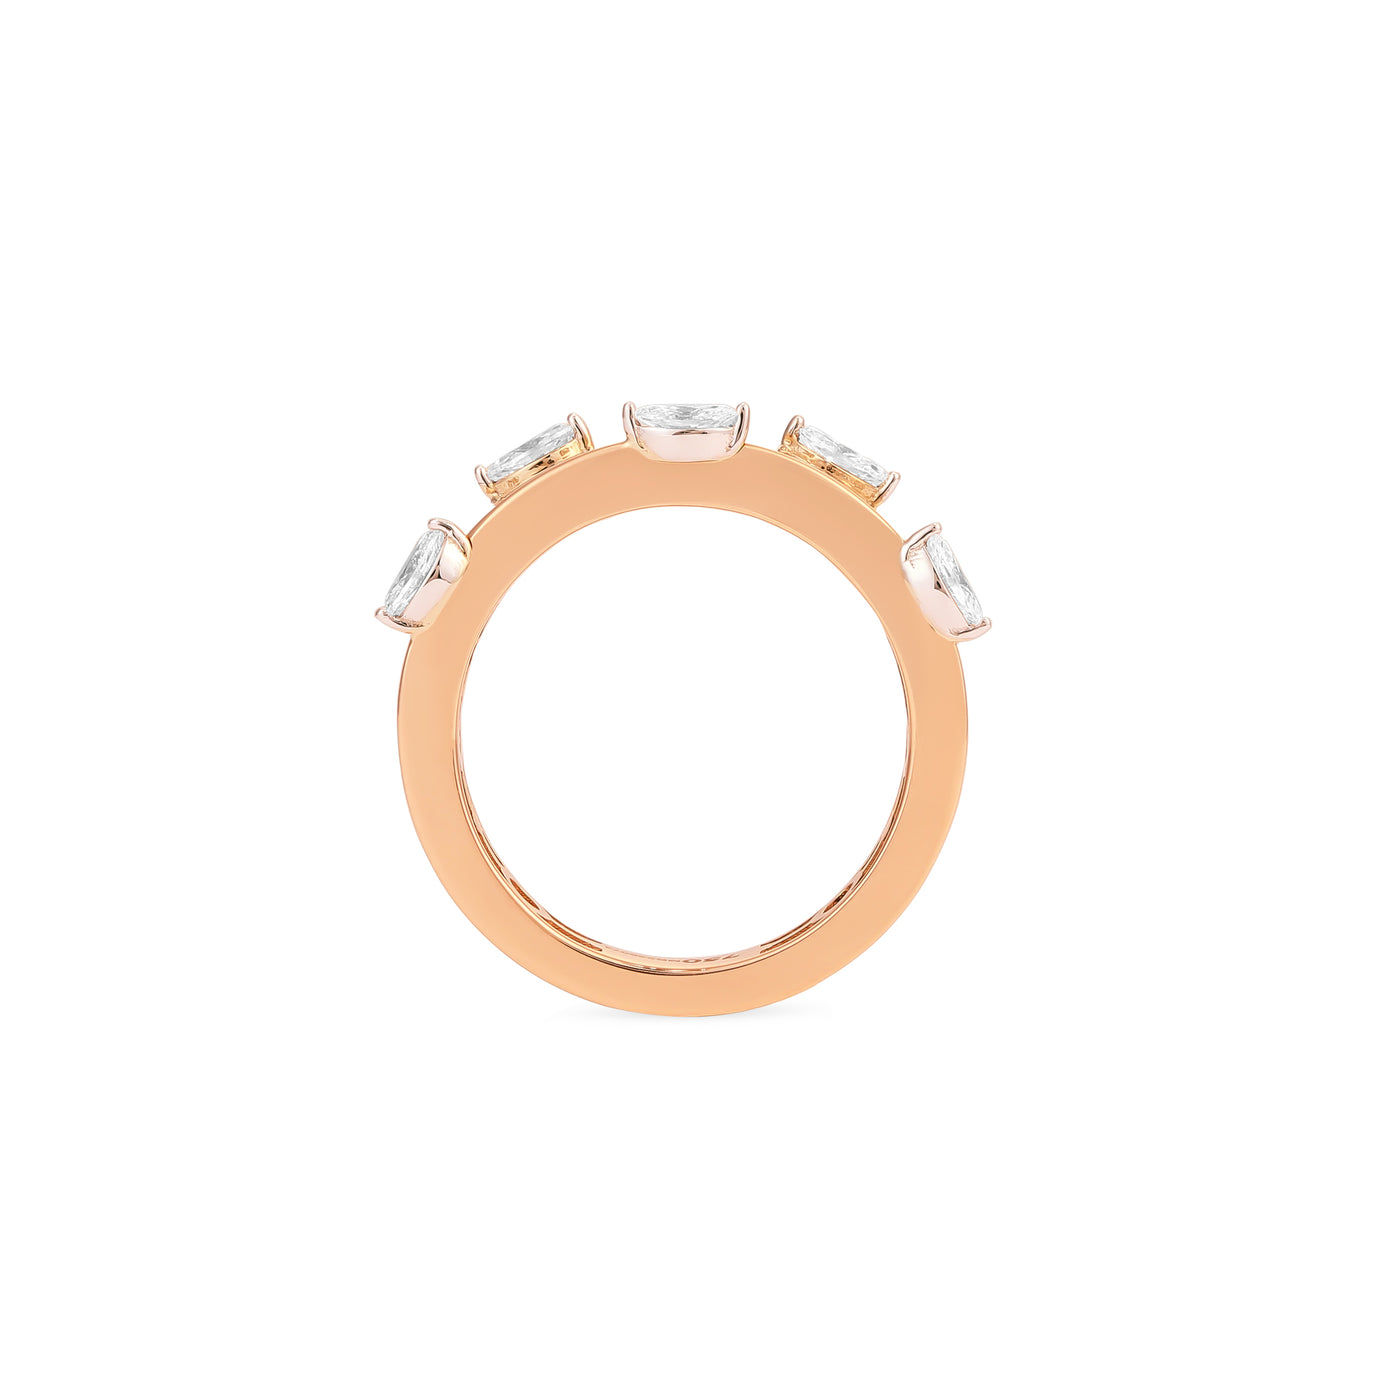 ETOILE Rose Gold Scattered Diamond Ring